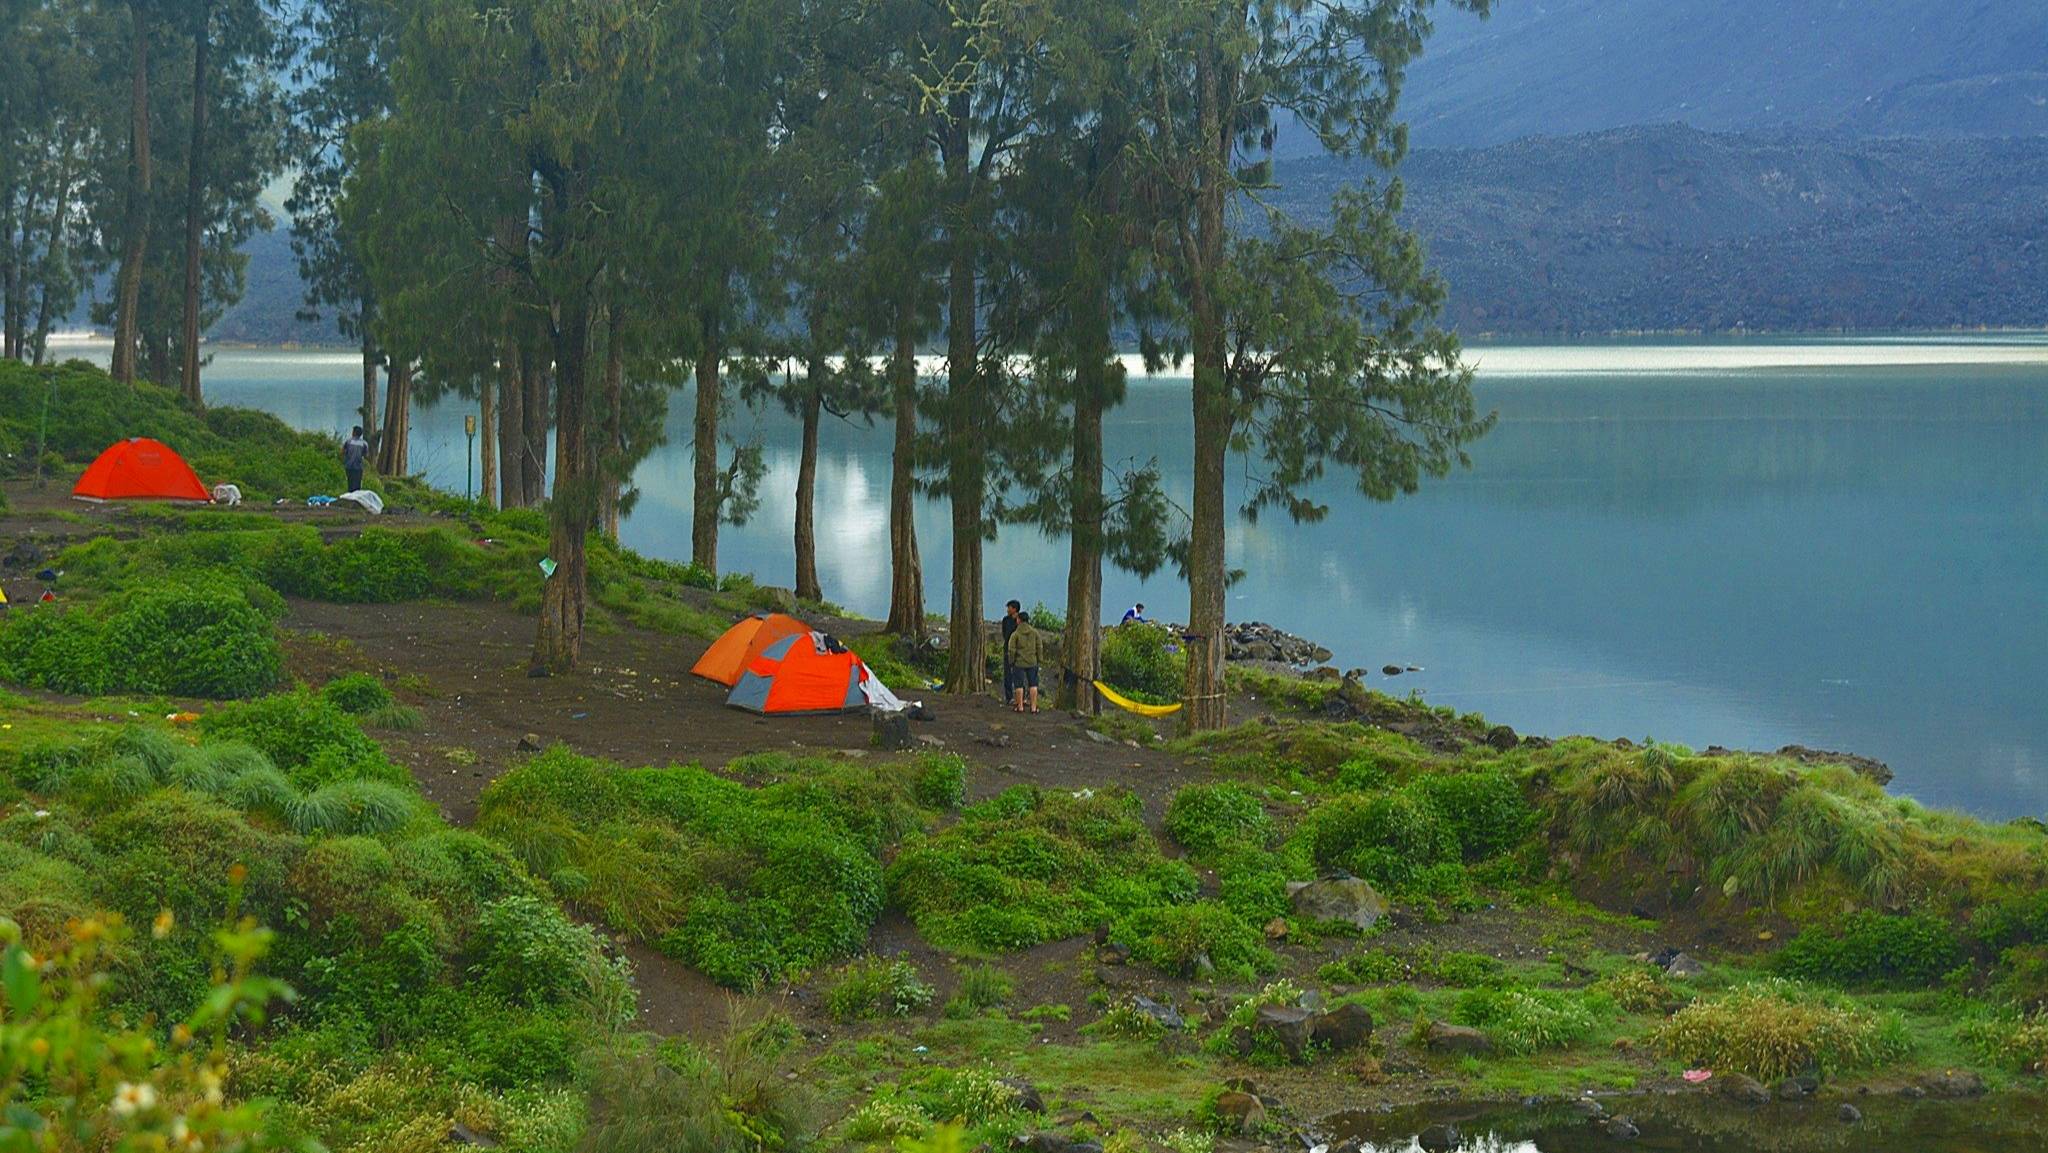 at Segara Anak Lake Campsite with Bas Rinjani trekking Organizer Team, 3 Days 2 Nights (Senaru Rim, 2nd Summit, Lake, Torean)